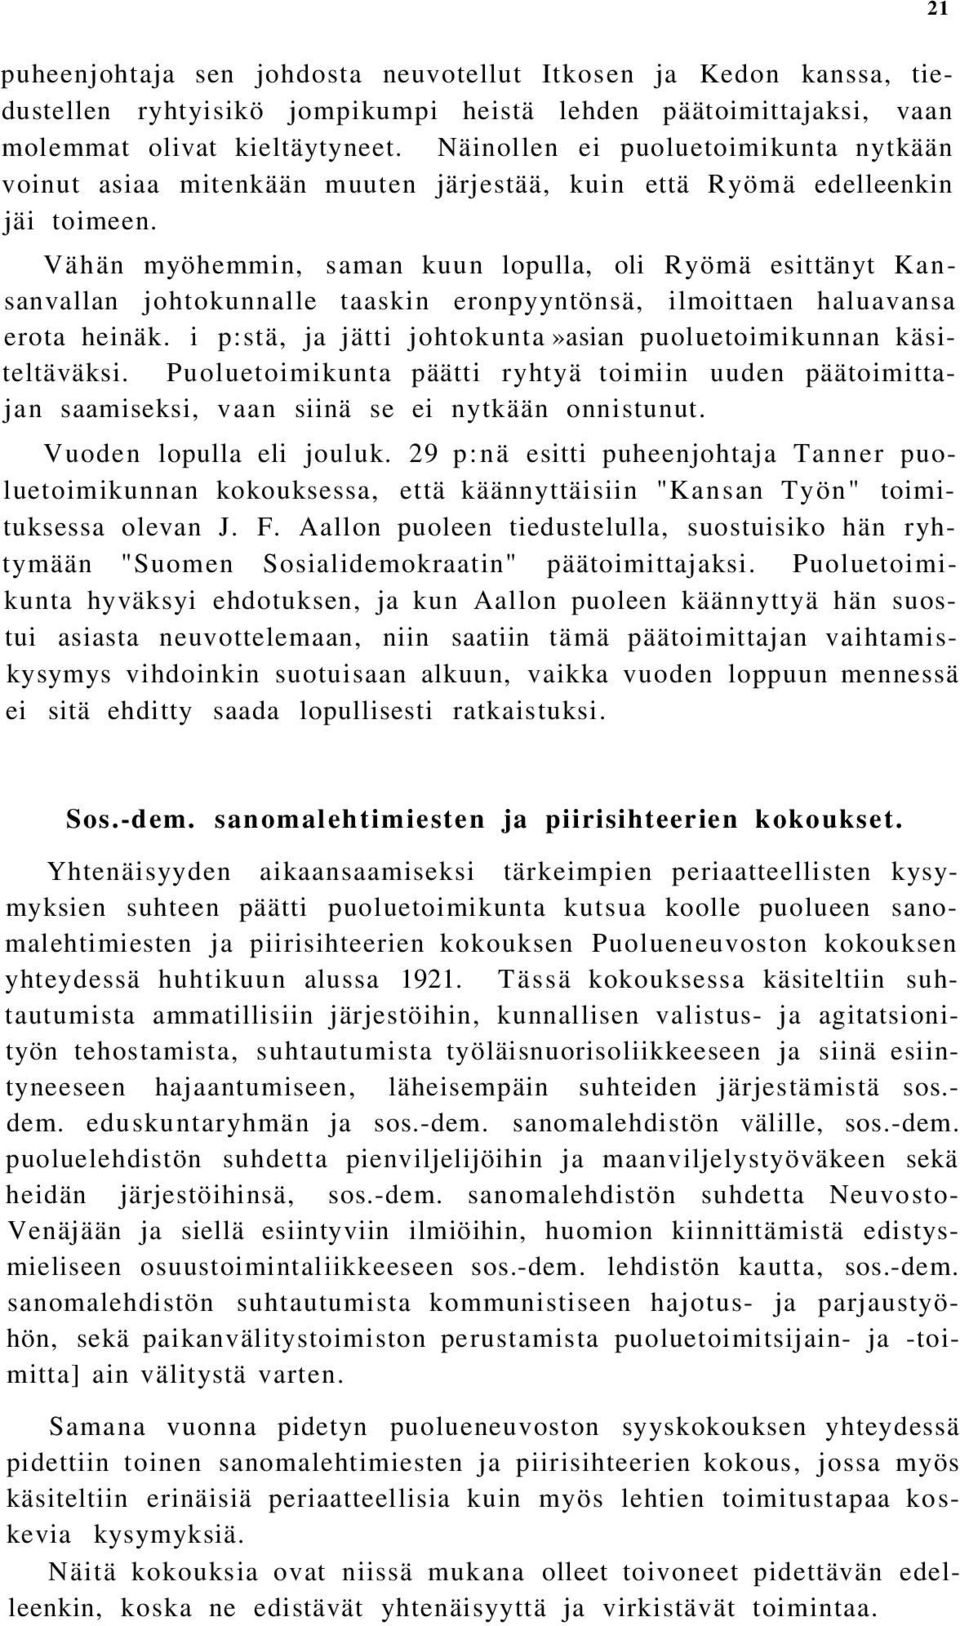 Vähän myöhemmin, saman kuun lopulla, oli Ryömä esittänyt Kansanvallan johtokunnalle taaskin eronpyyntönsä, ilmoittaen haluavansa erota heinäk.